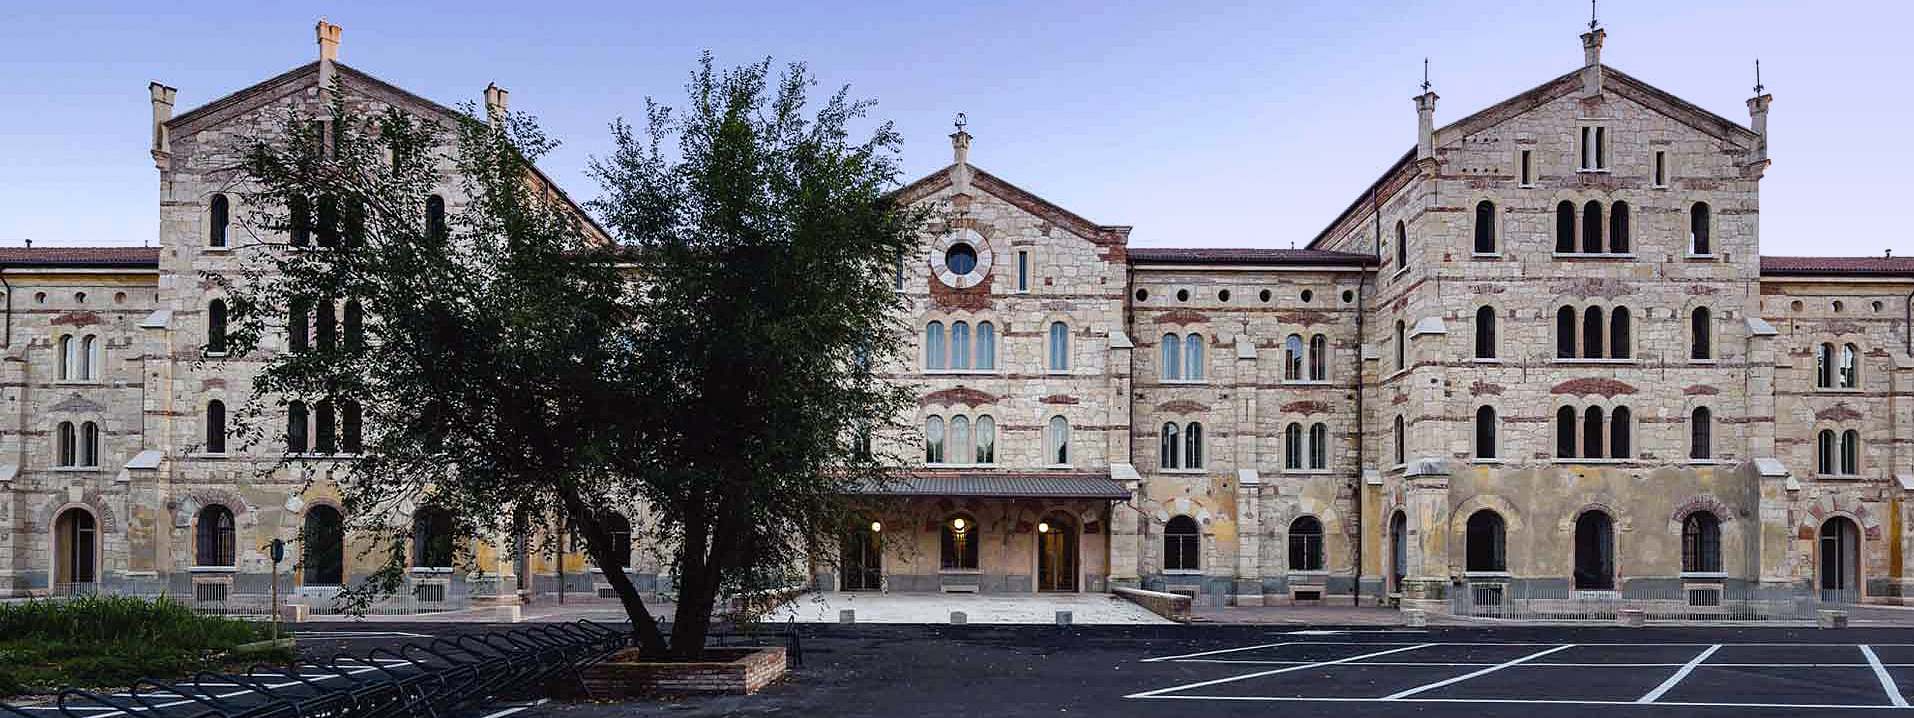 Impresa e cultura ala sede di Santa Marta dell'Università di Verona